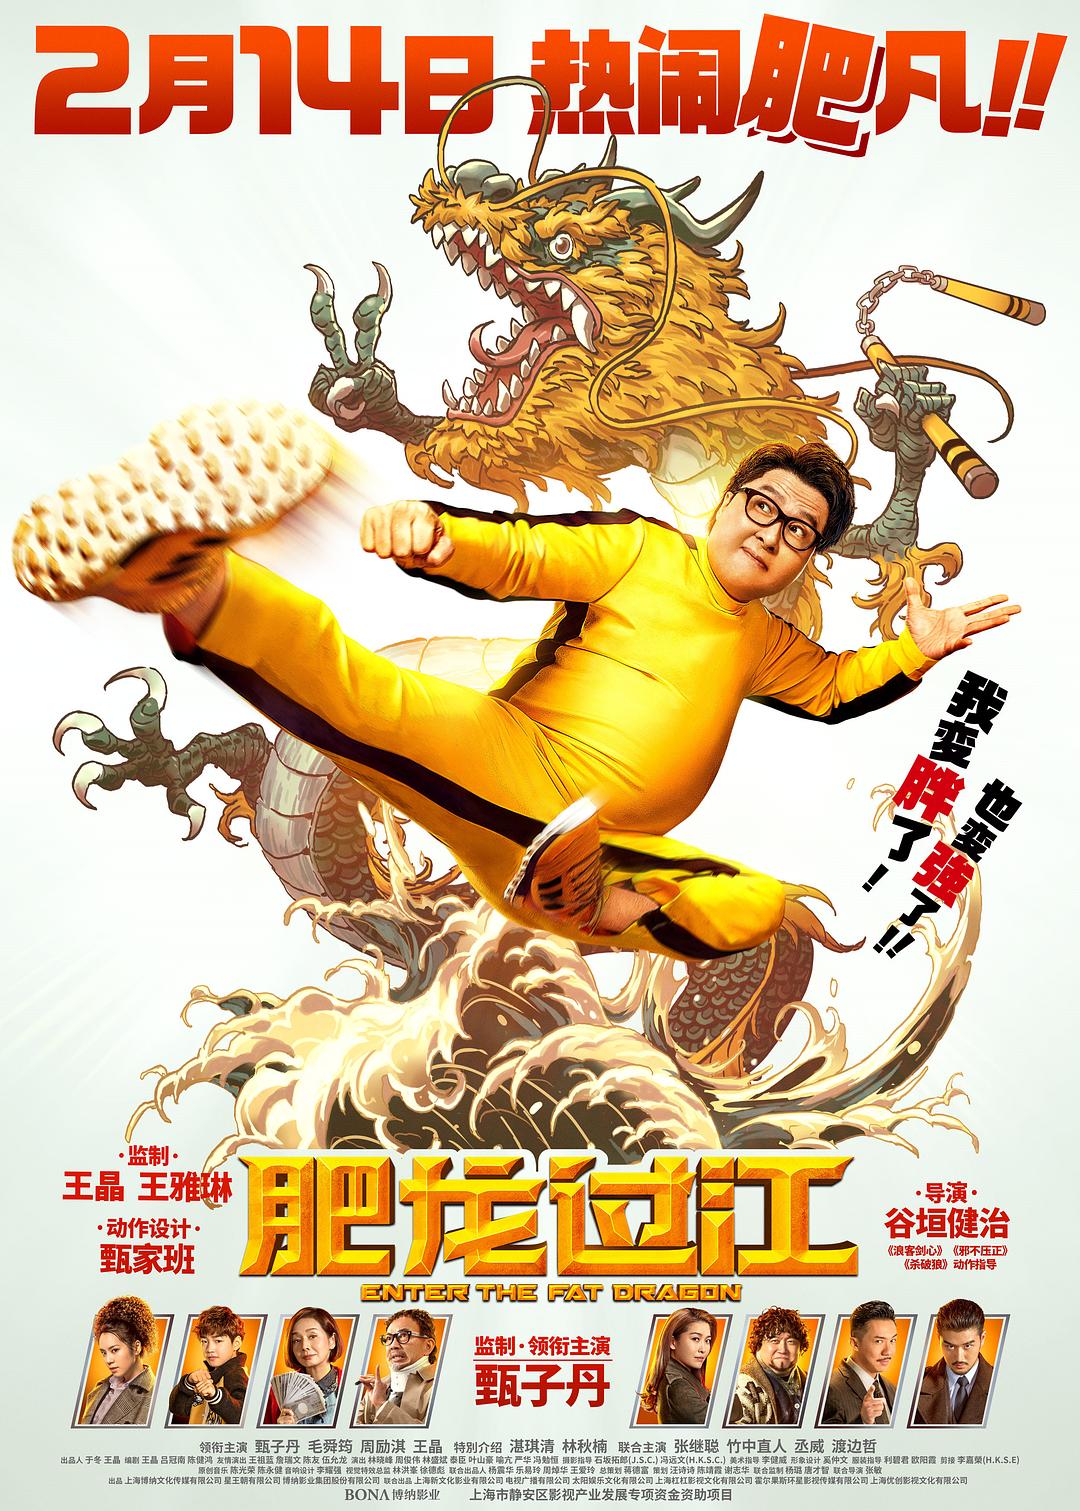 肥龍過江 Enter.the.Fat.Dragon.2020.CHINESE.1080p.BluRay.x264-iKiW 8.56GB-1.png